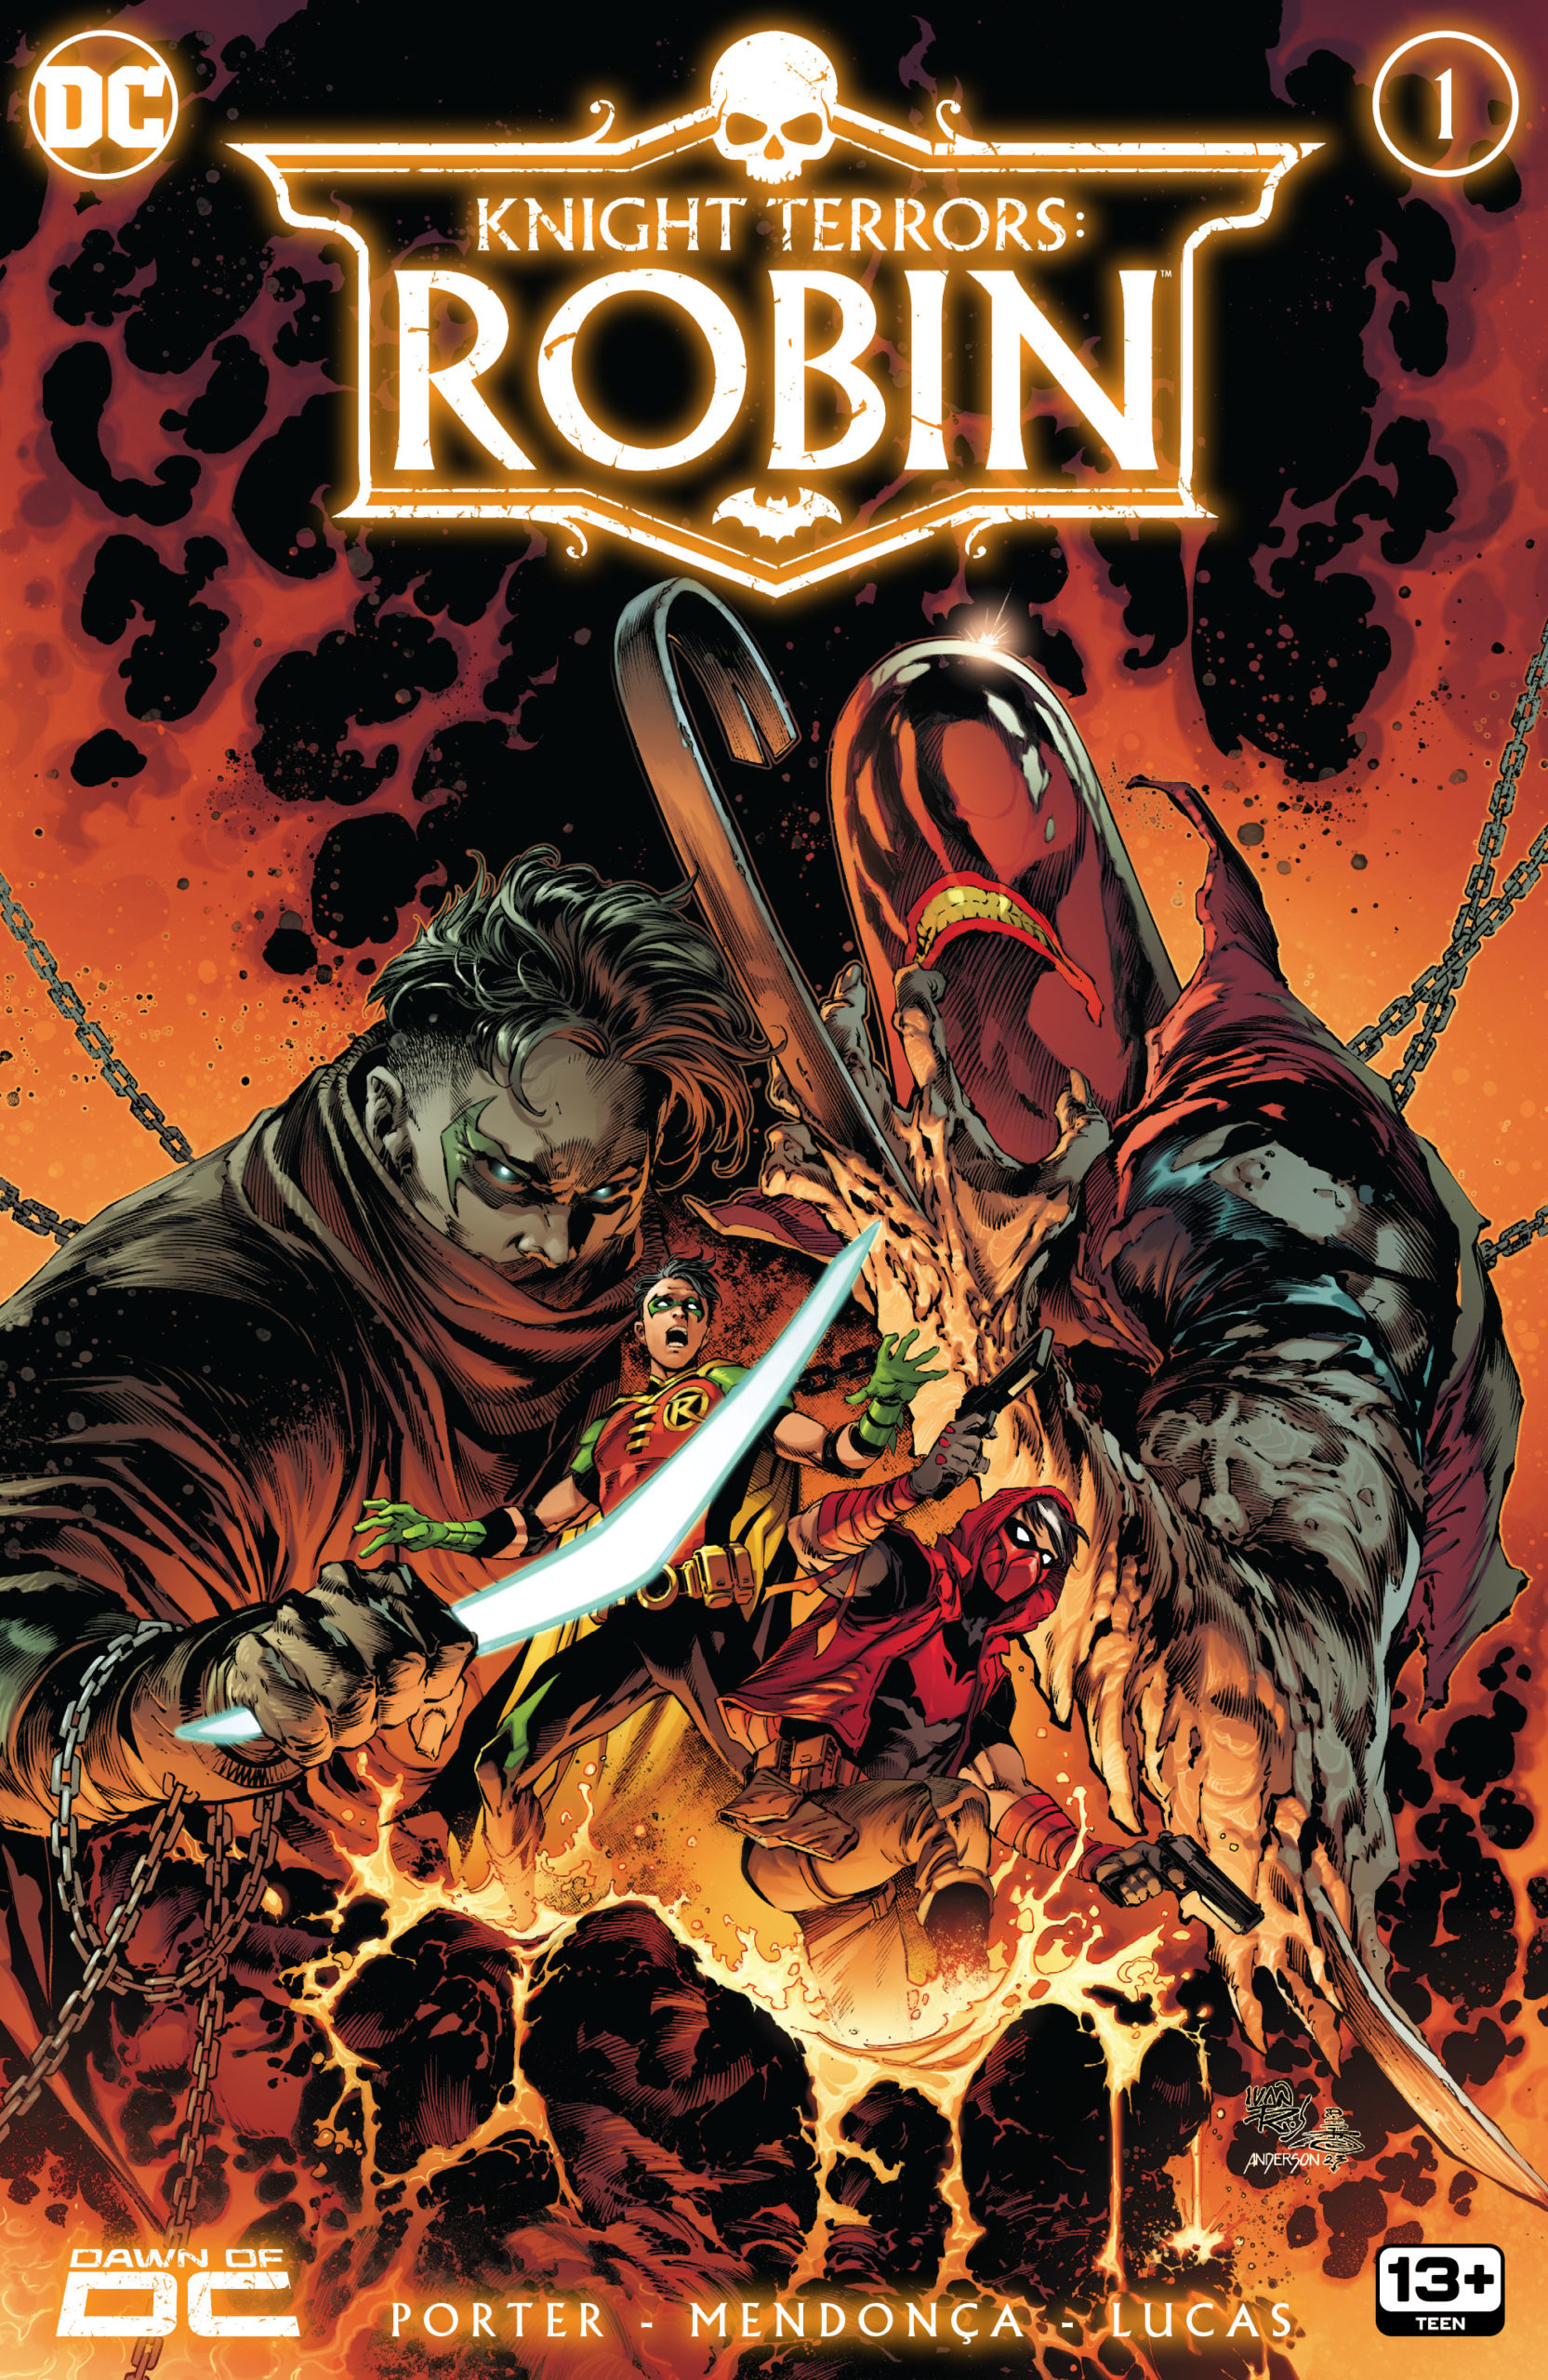 Knight Terrors: Robin#1